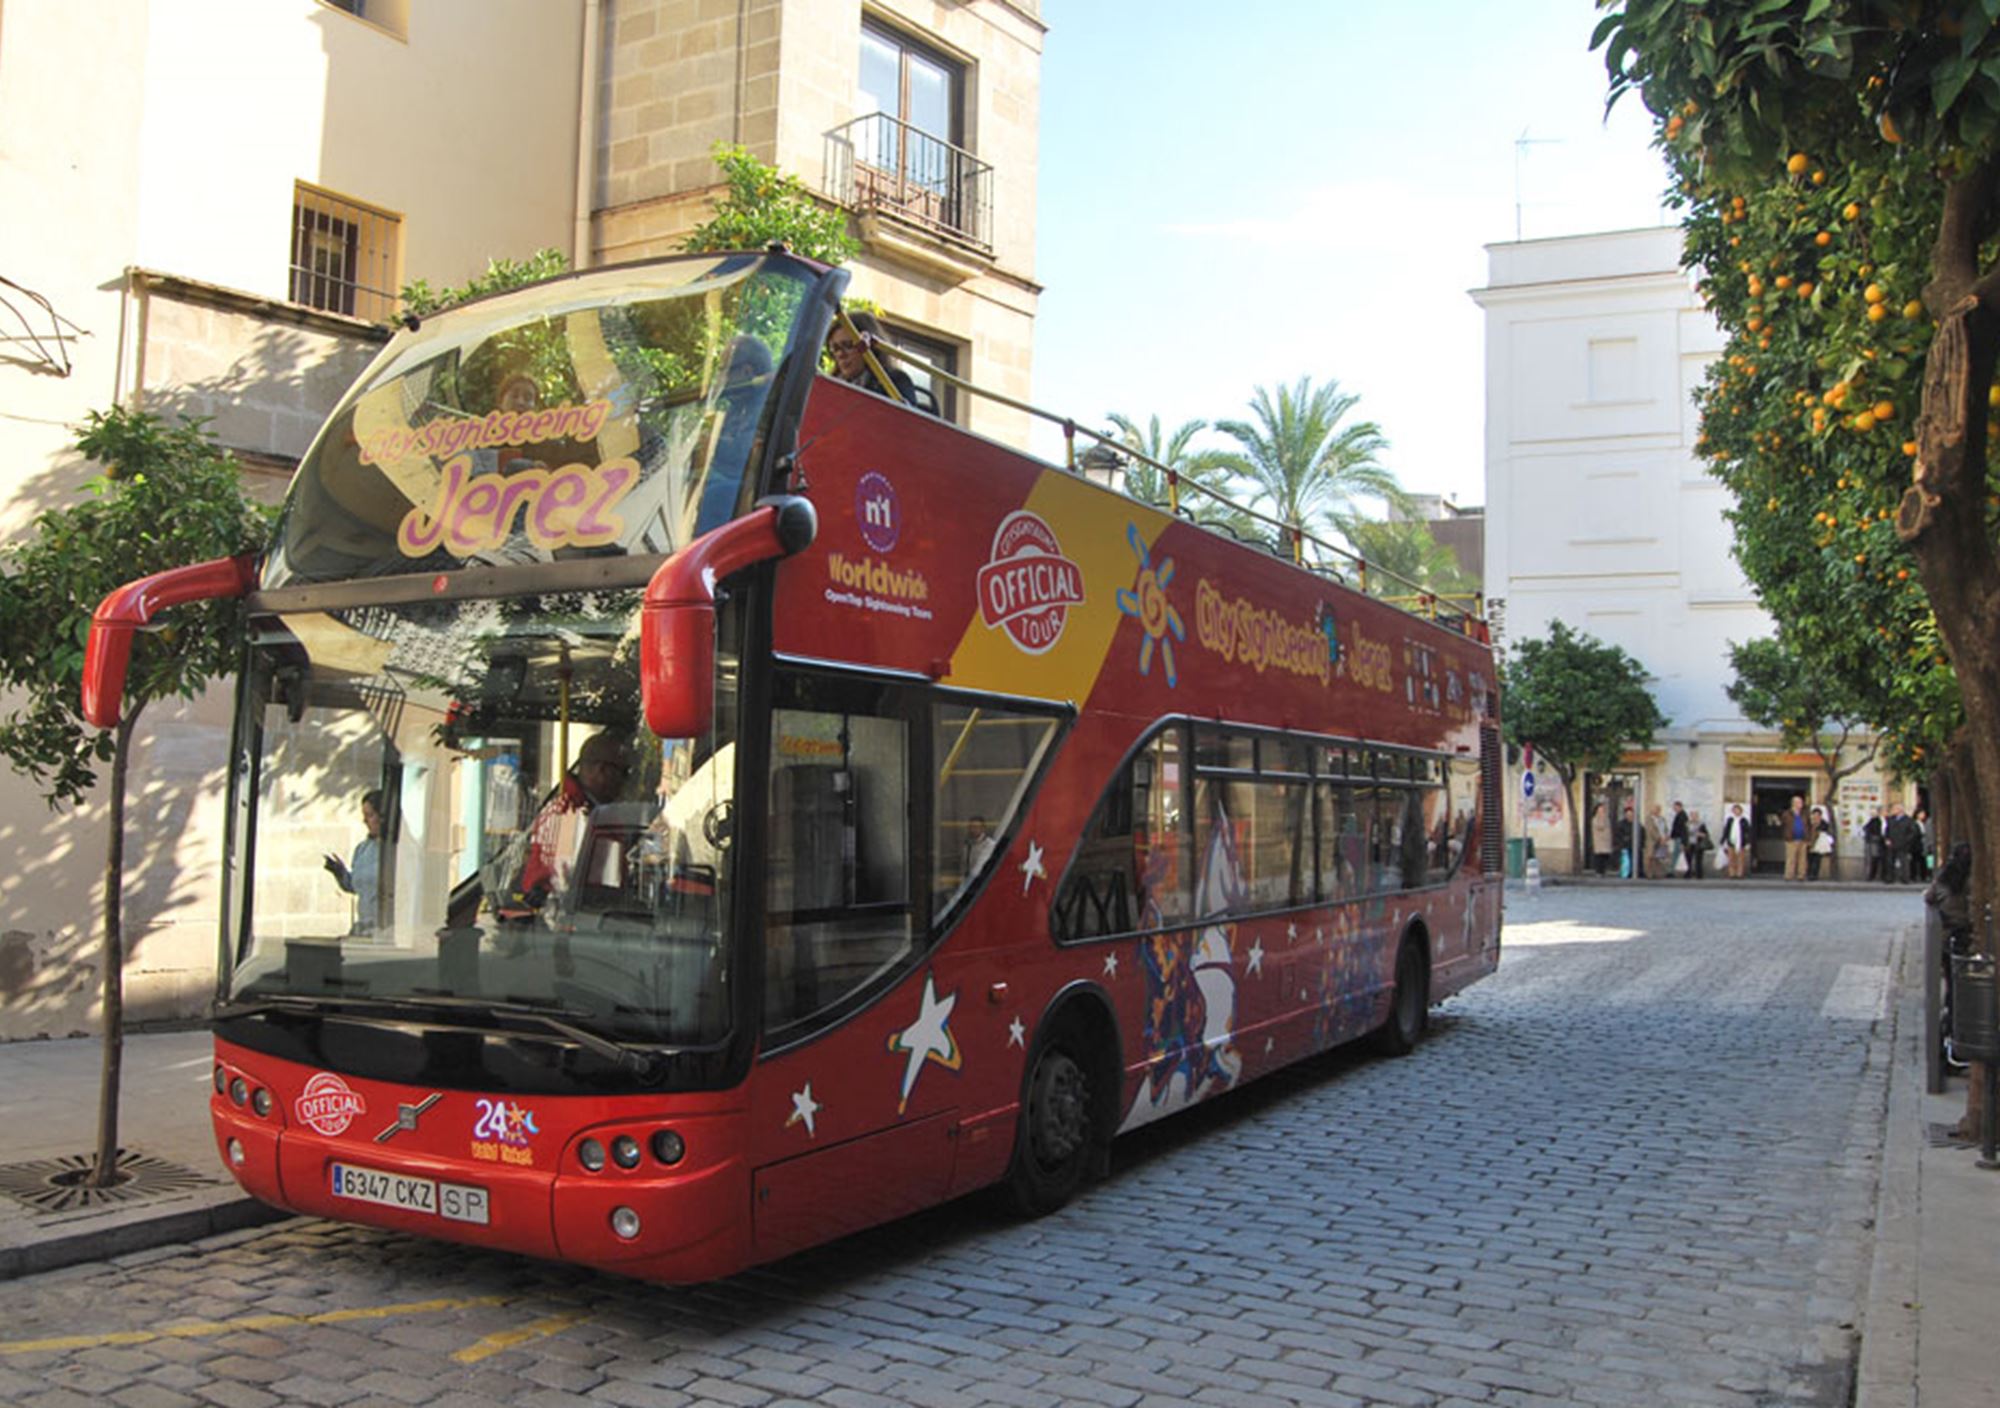 réservations réserver visites Bus Touristique City Sightseeing Jerez de la Frontera billets visiter